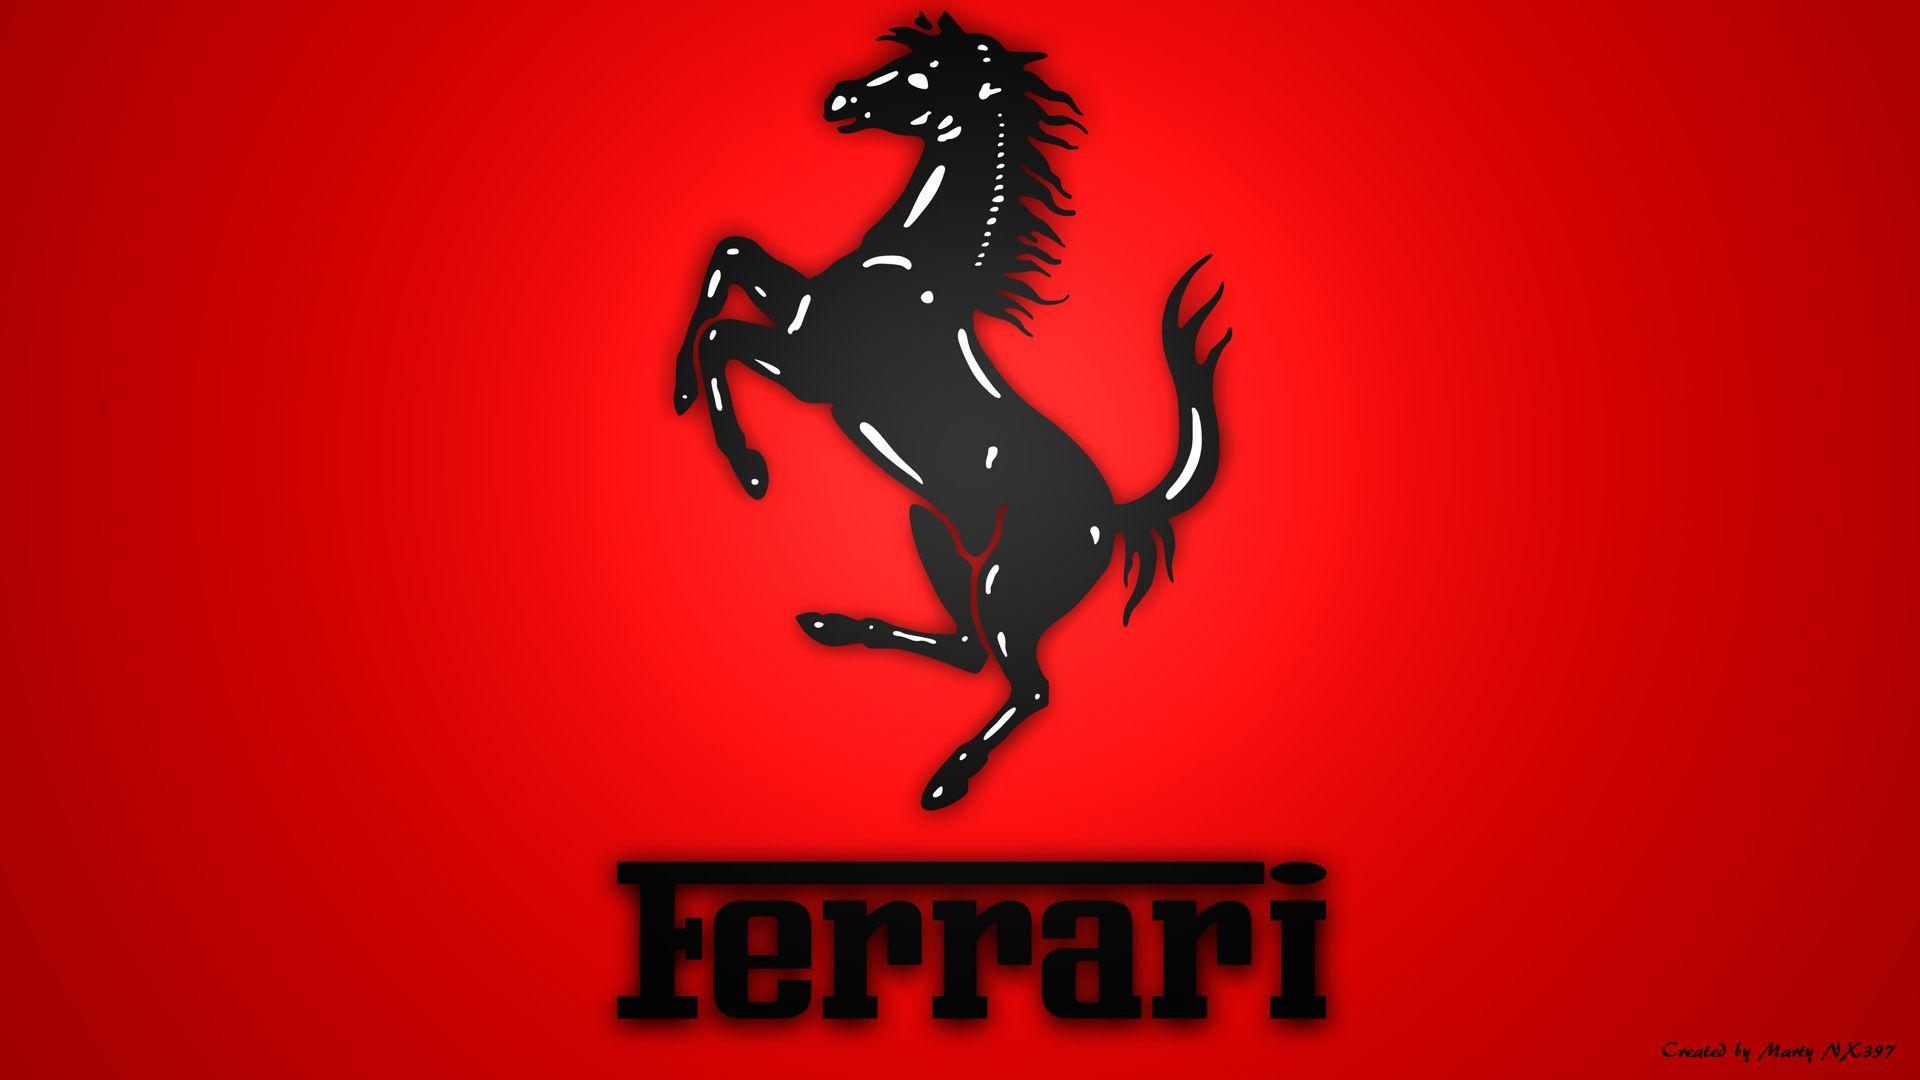 Logo Ferrari Picture wallpaper. vector and designs